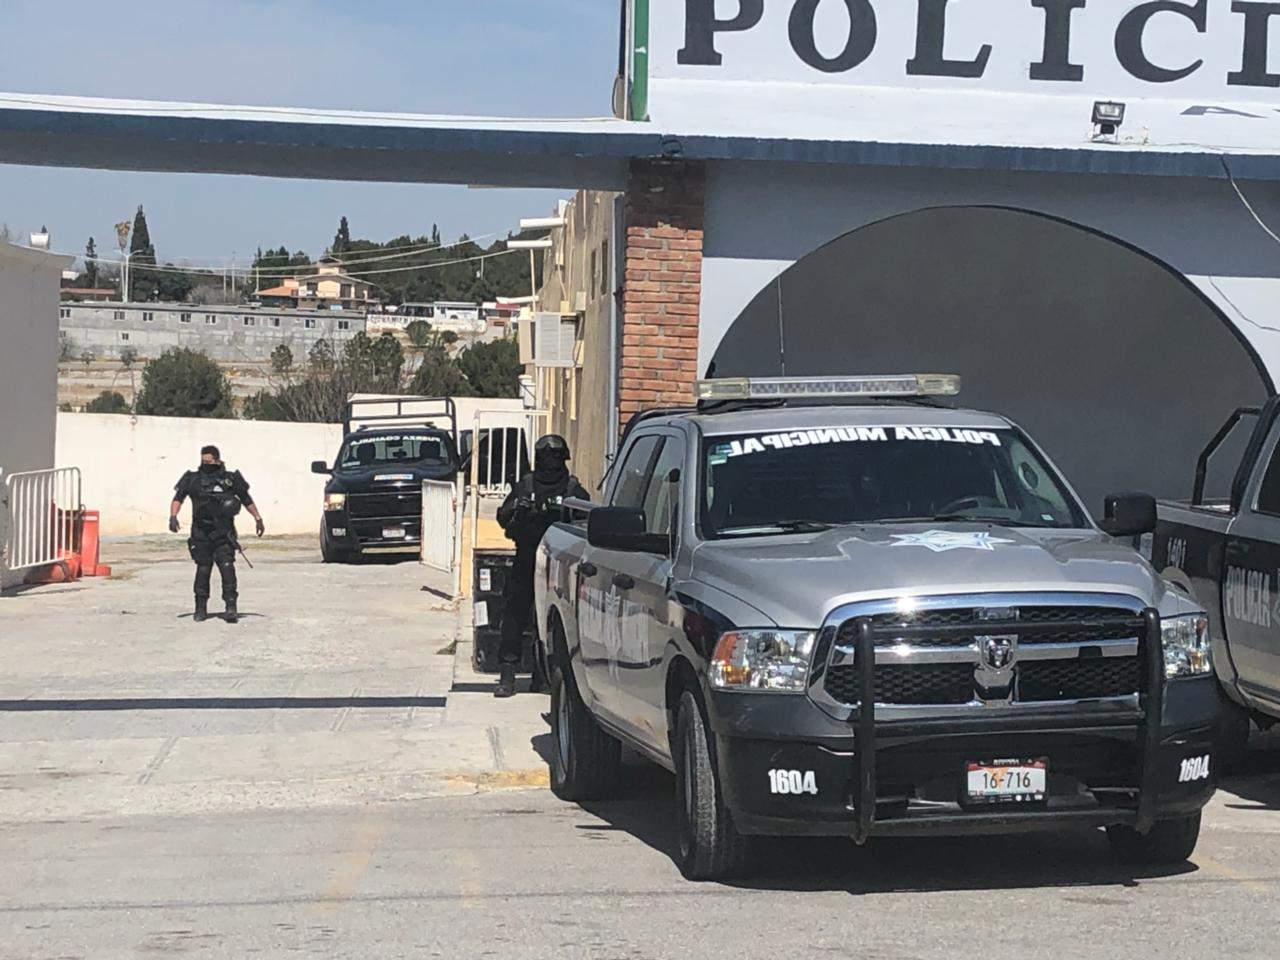 Luego del ataque registrado, la comandancia municipal se encuentra resguardada por elementos de Fuerza Coahuila. (ESPECIAL)